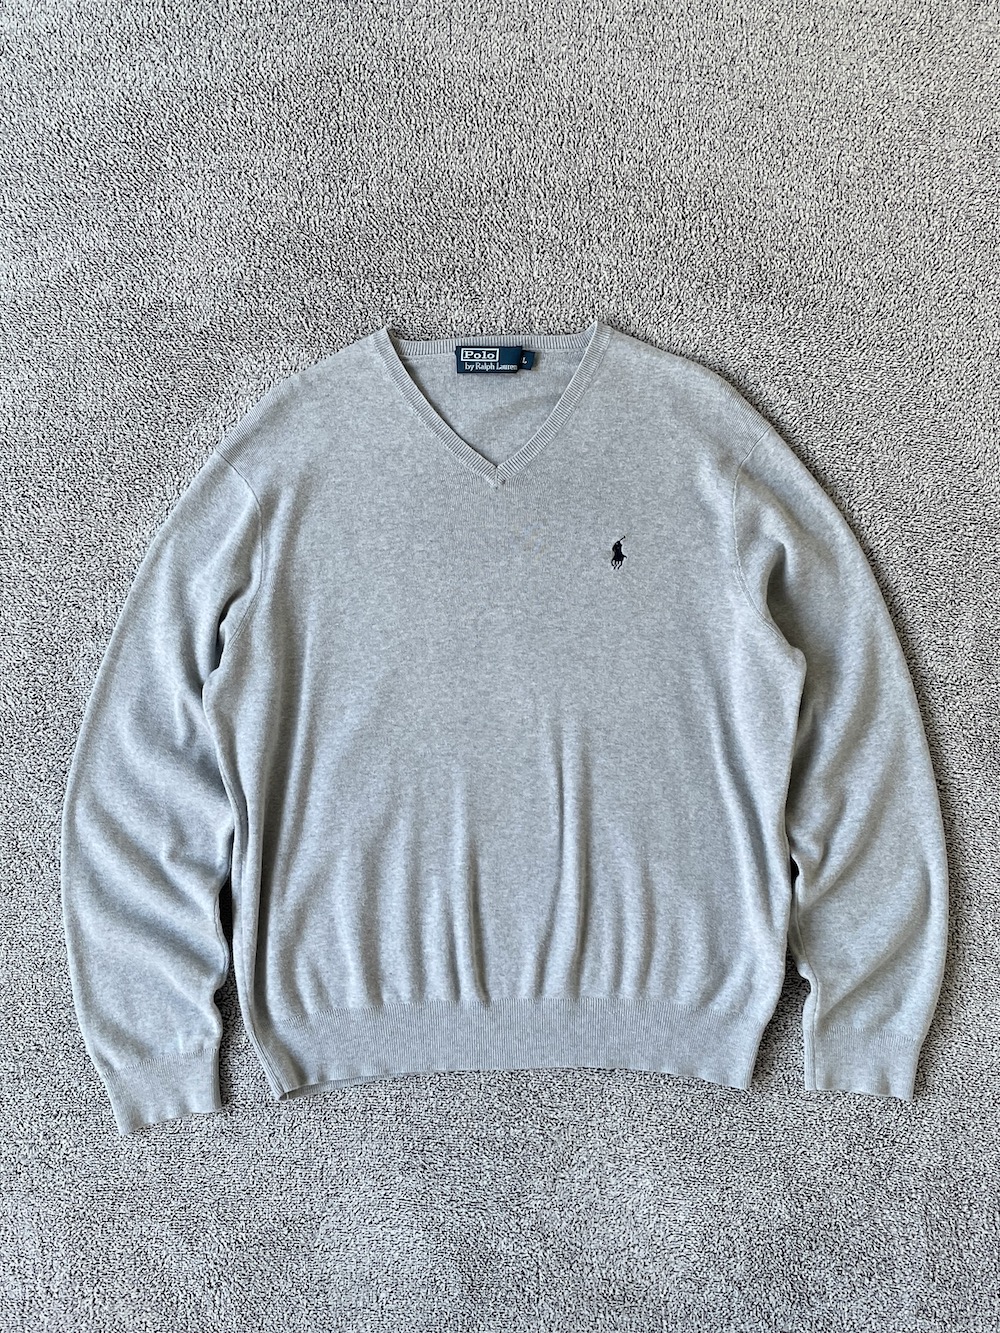 [ L ] Polo Ralph Lauren Sweater (6429)